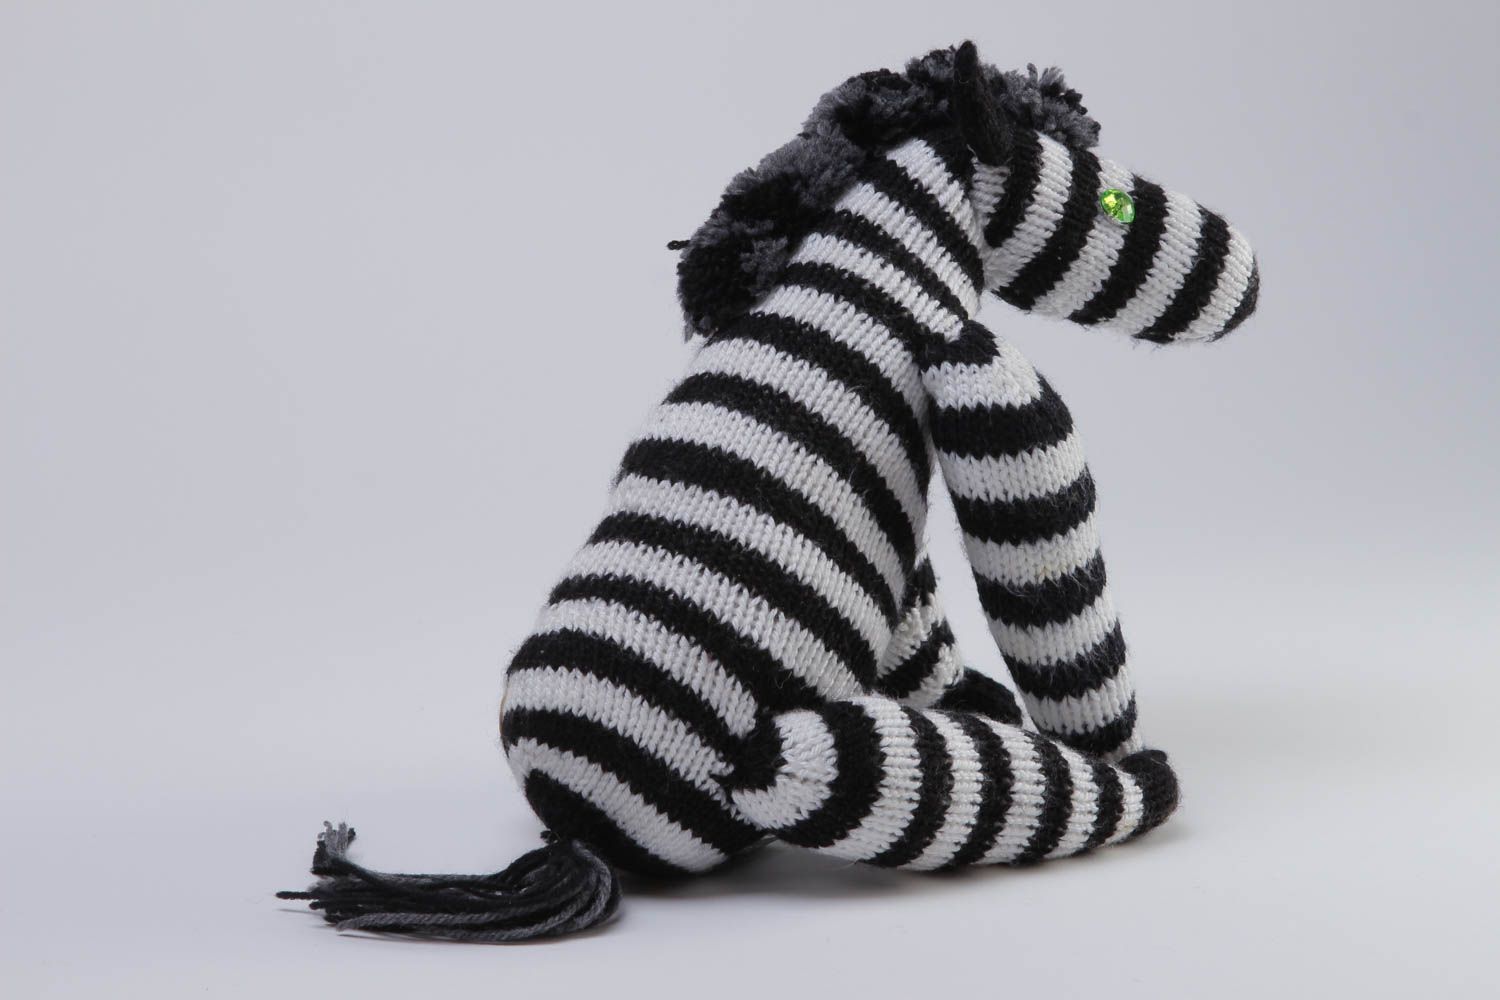 Handmade Strick Kuscheltier Zebra Spielzeug Geschenkidee für Kinder schön foto 4